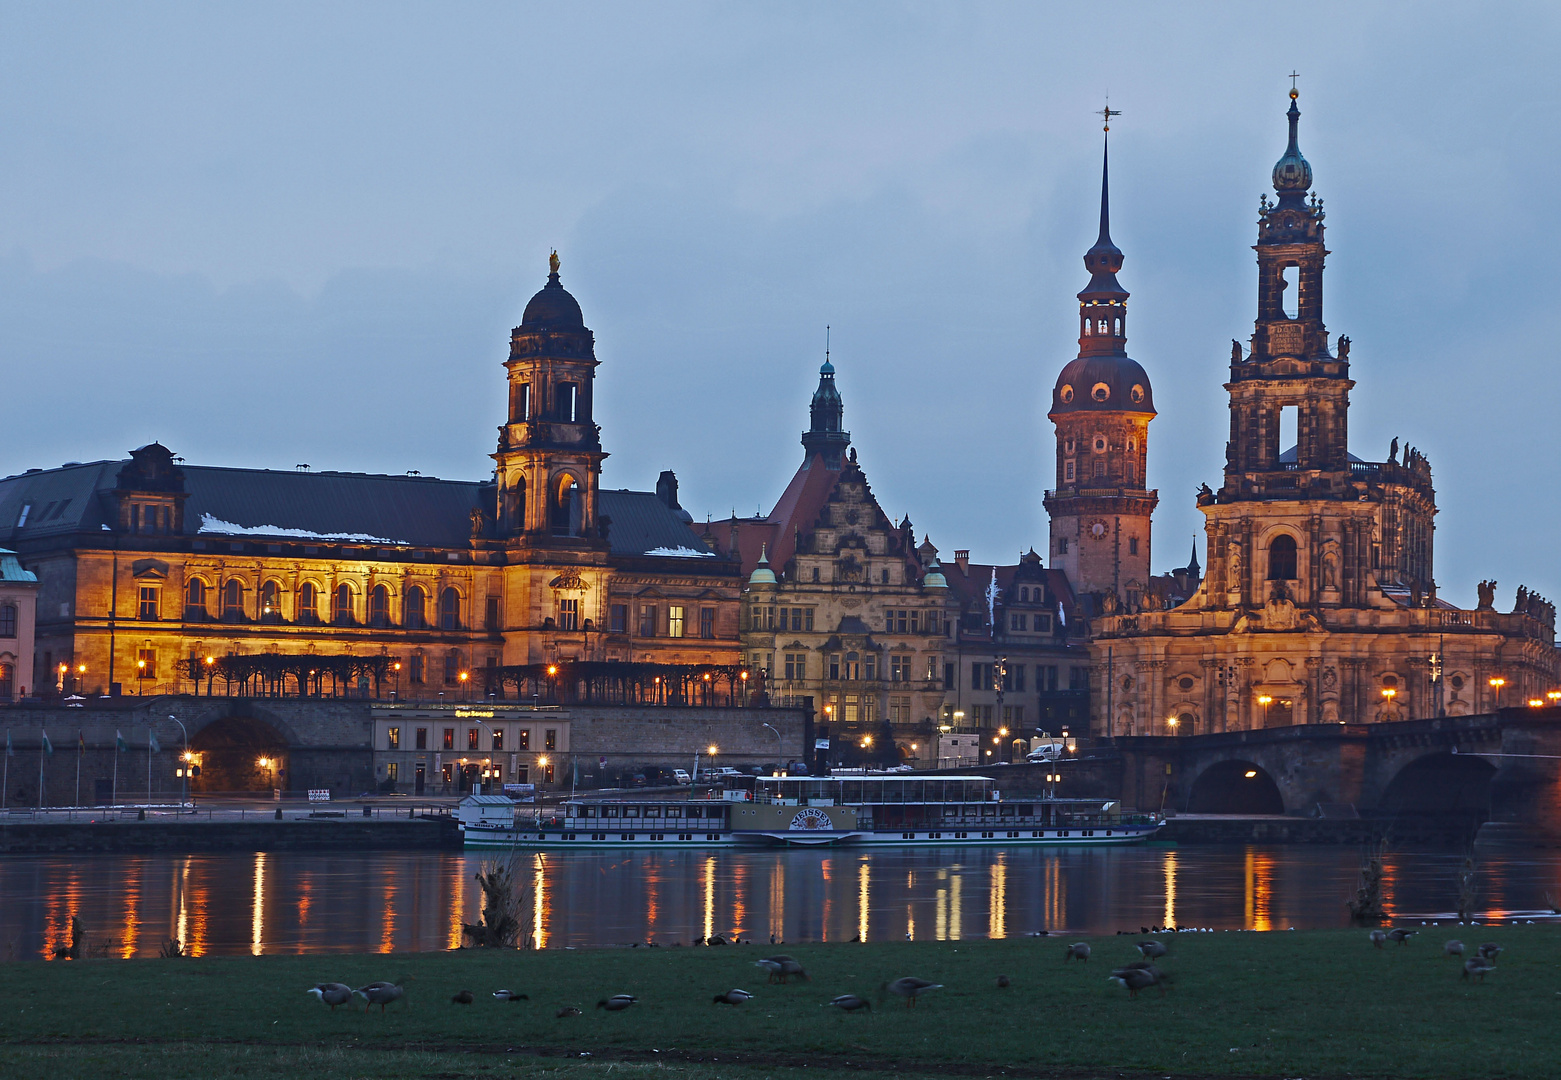 # Dresden aus meiner Sicht #